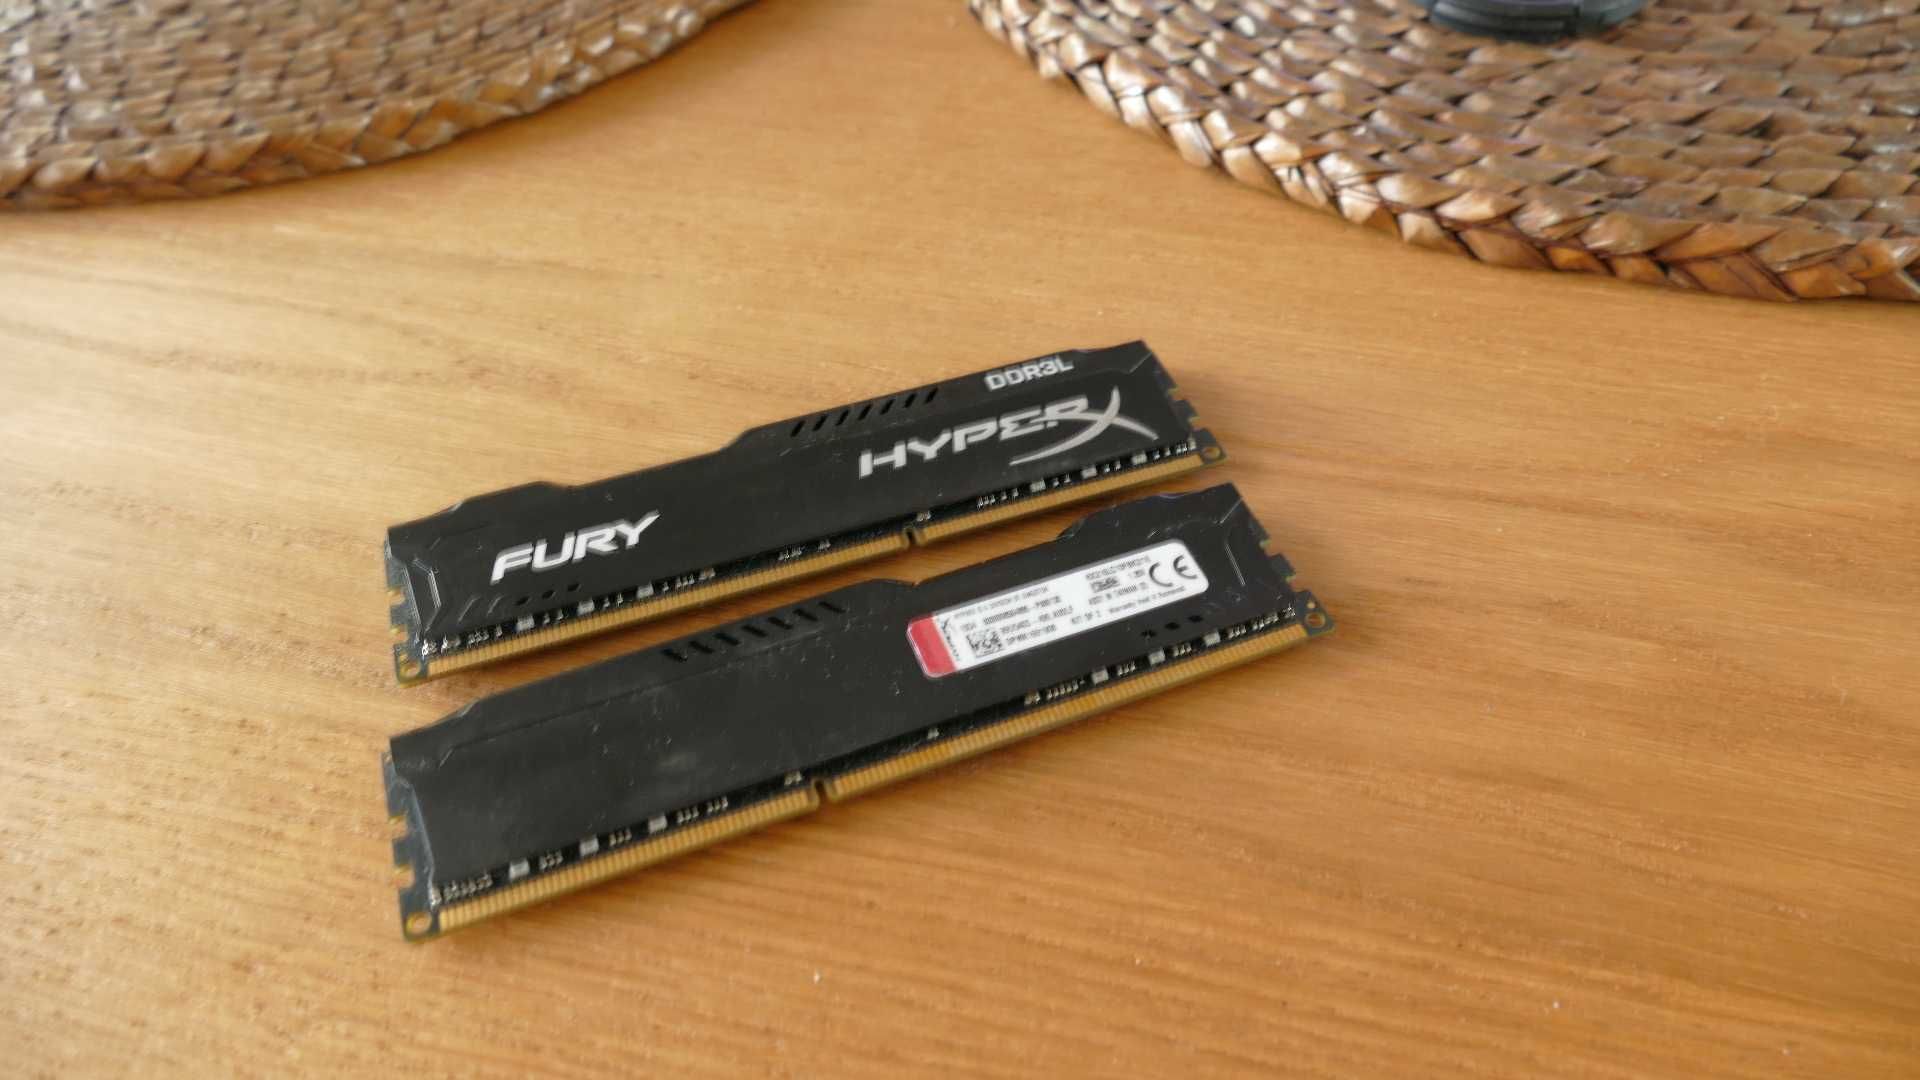 DDR3 HyperX Fury Black 8Gb